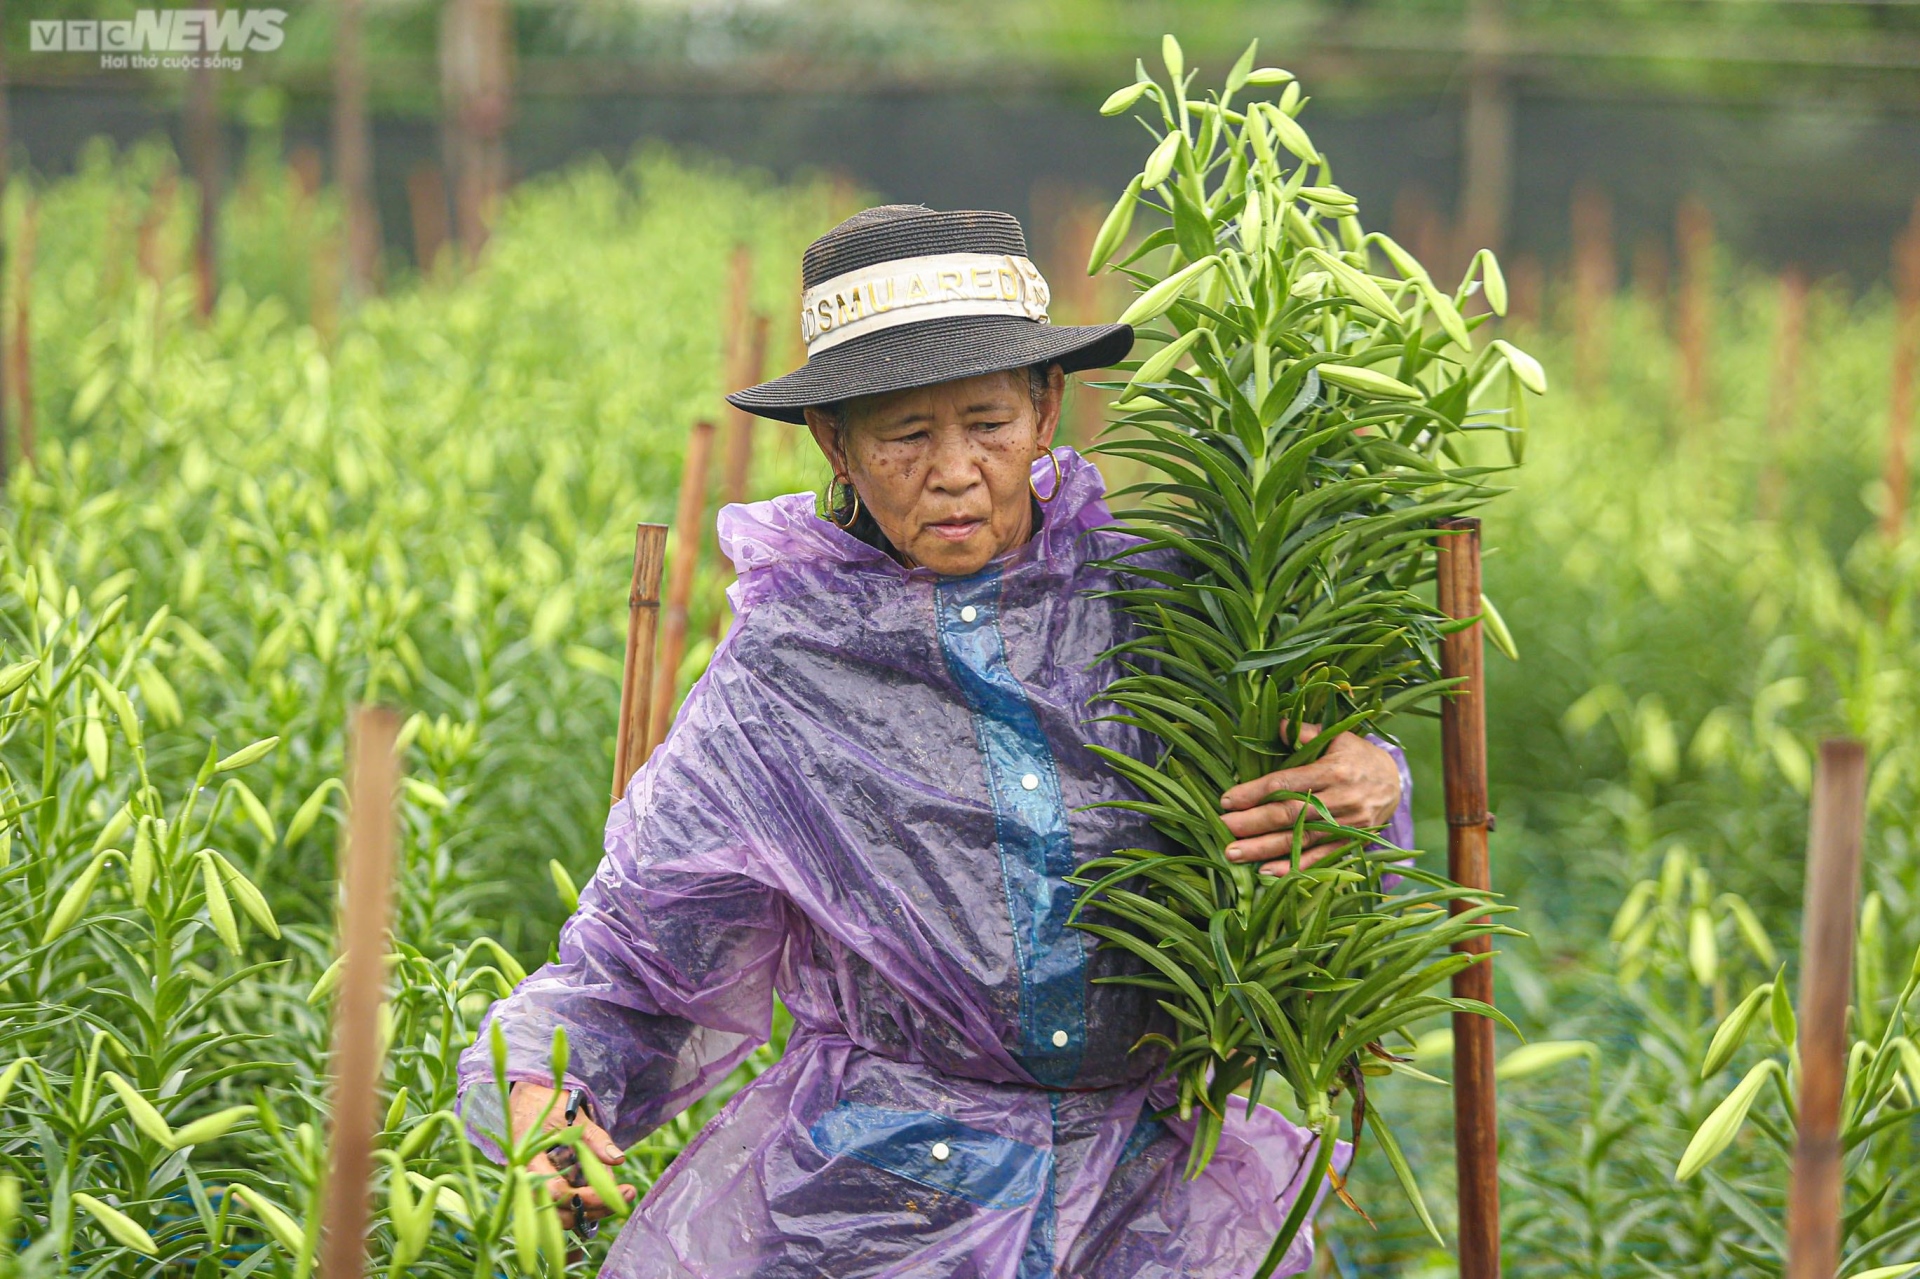 Hoa loa kèn vào vụ, nông dân ngoại thành Hà Nội thu chục triệu đồng mỗi ngày - 8